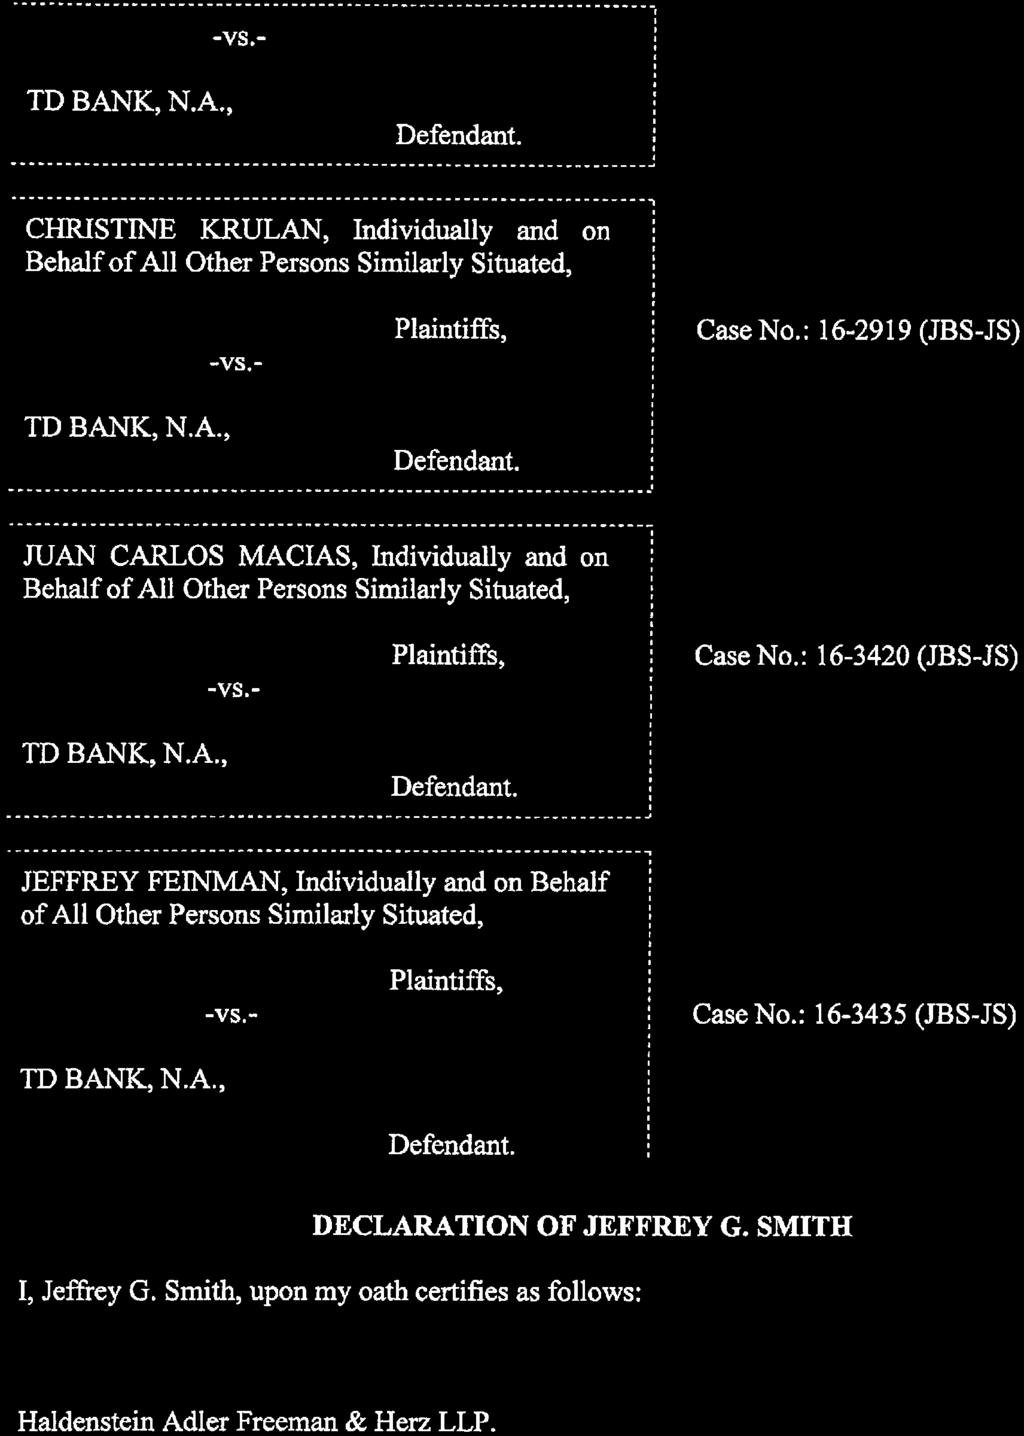 Case 1:16-cv-02374-JBS-JS Document 56-2